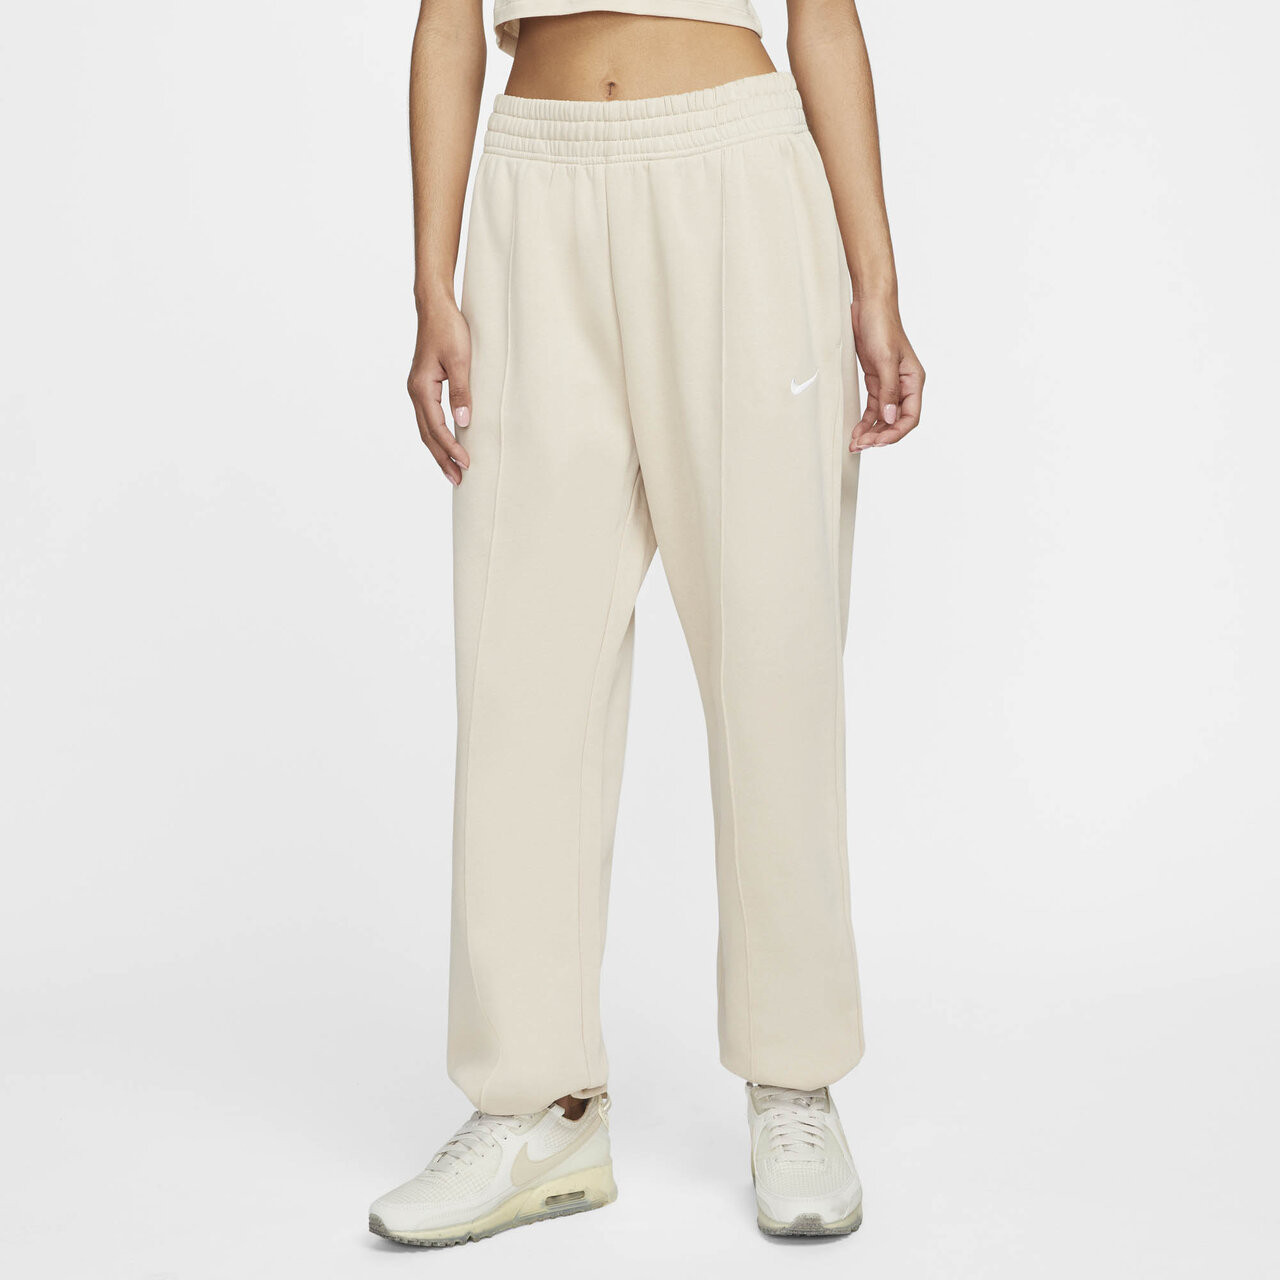 Shelta - Nike Womens Essential Fleece Pant Sanddrift (BV4089-126)